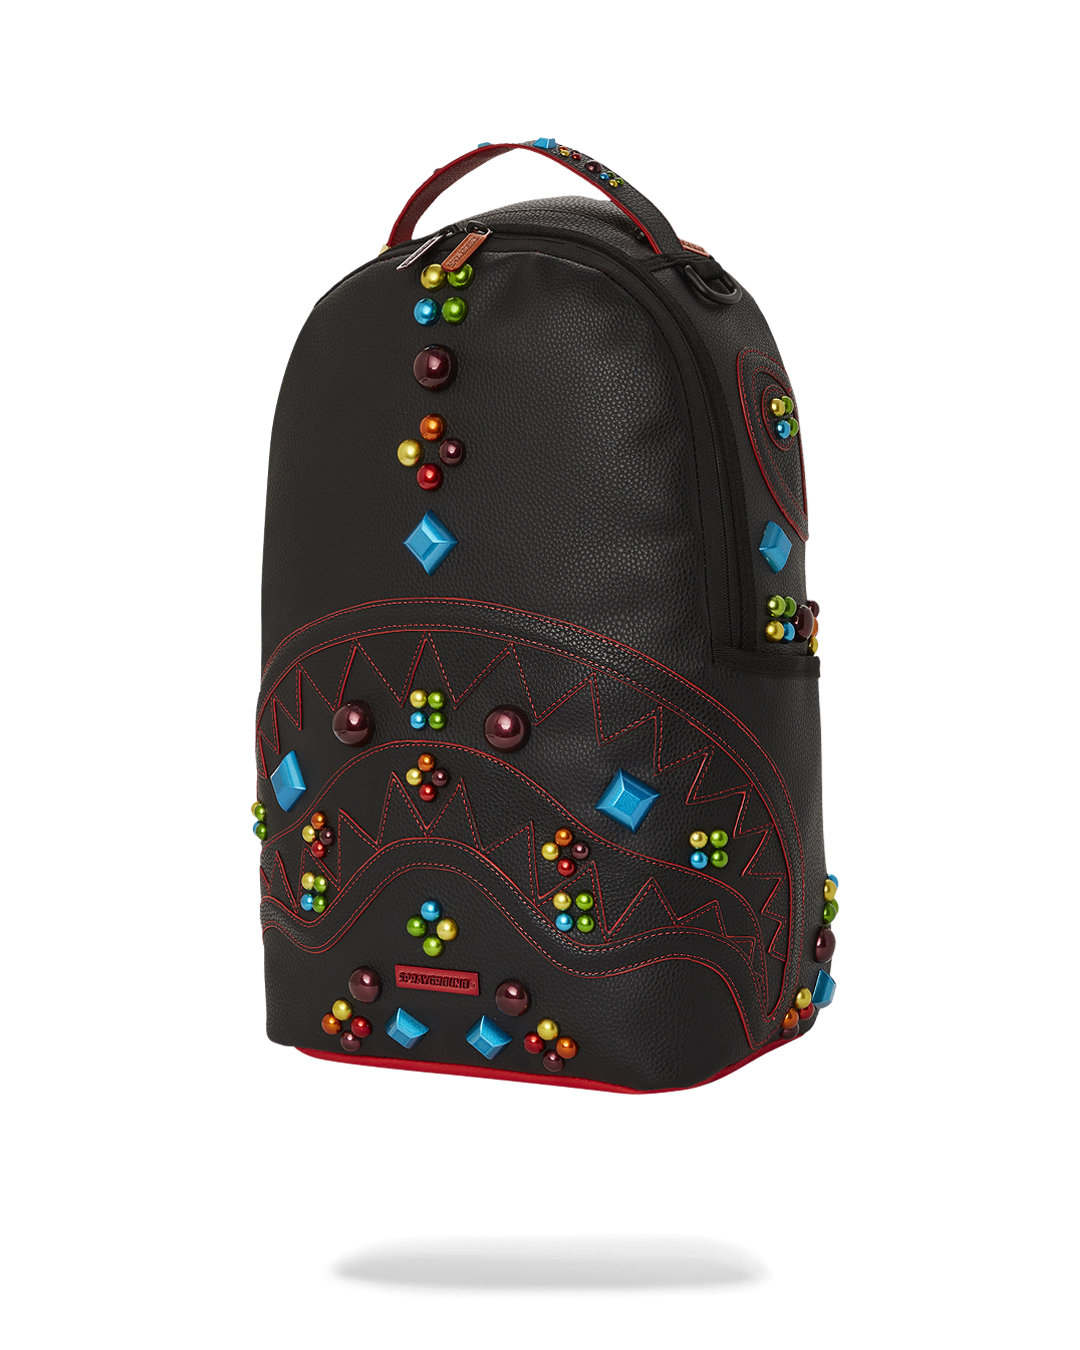 Sprayground backpack v2018 - - Gem